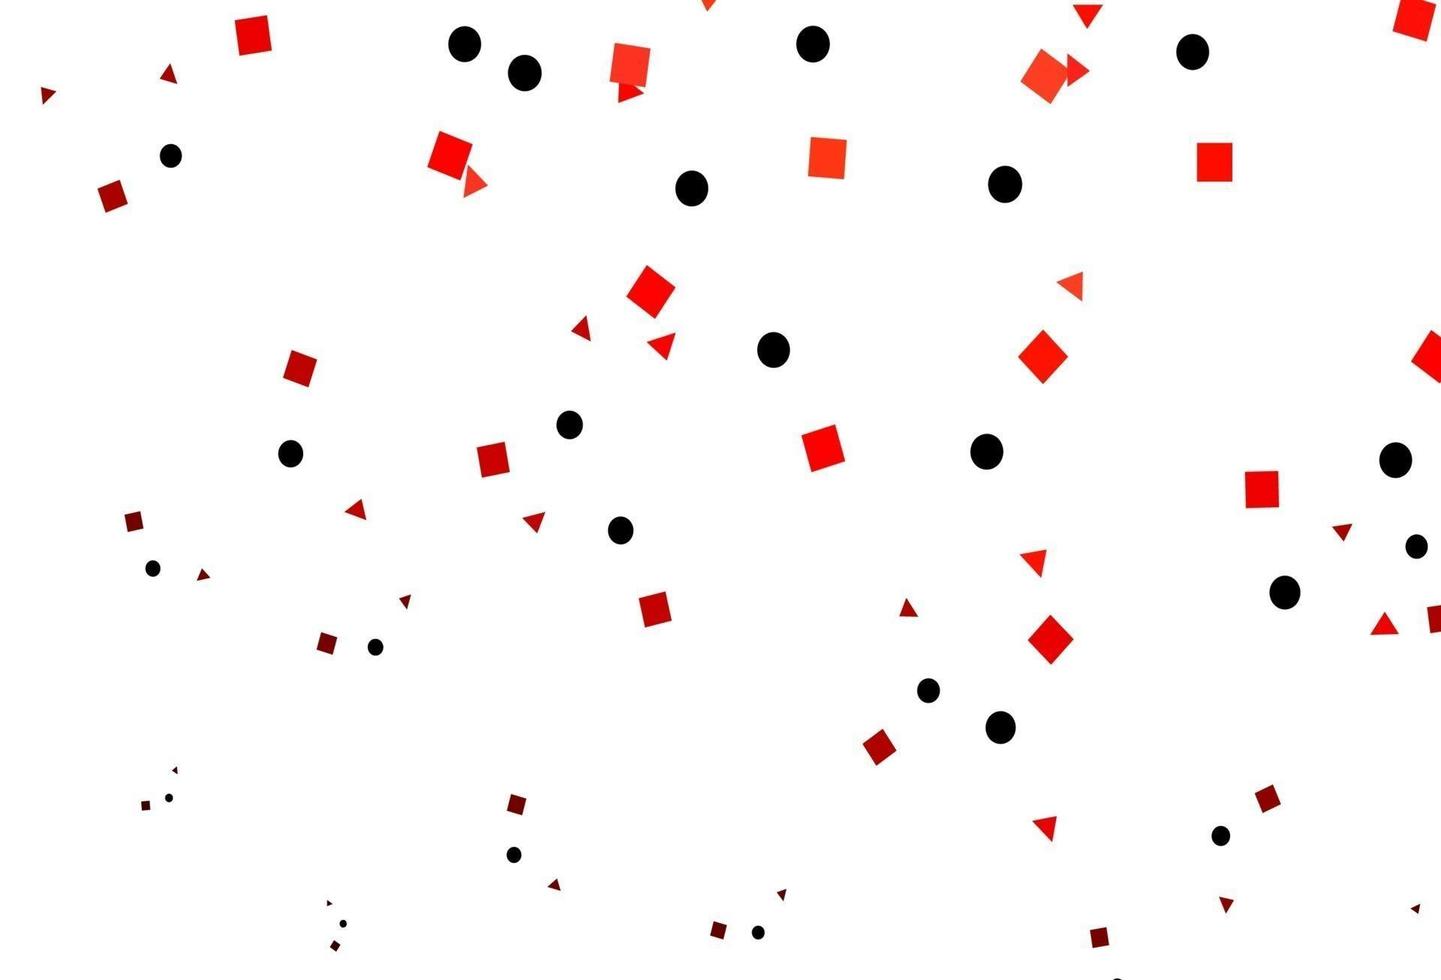 copertina vettoriale rosso chiaro in stile poligonale con cerchi.